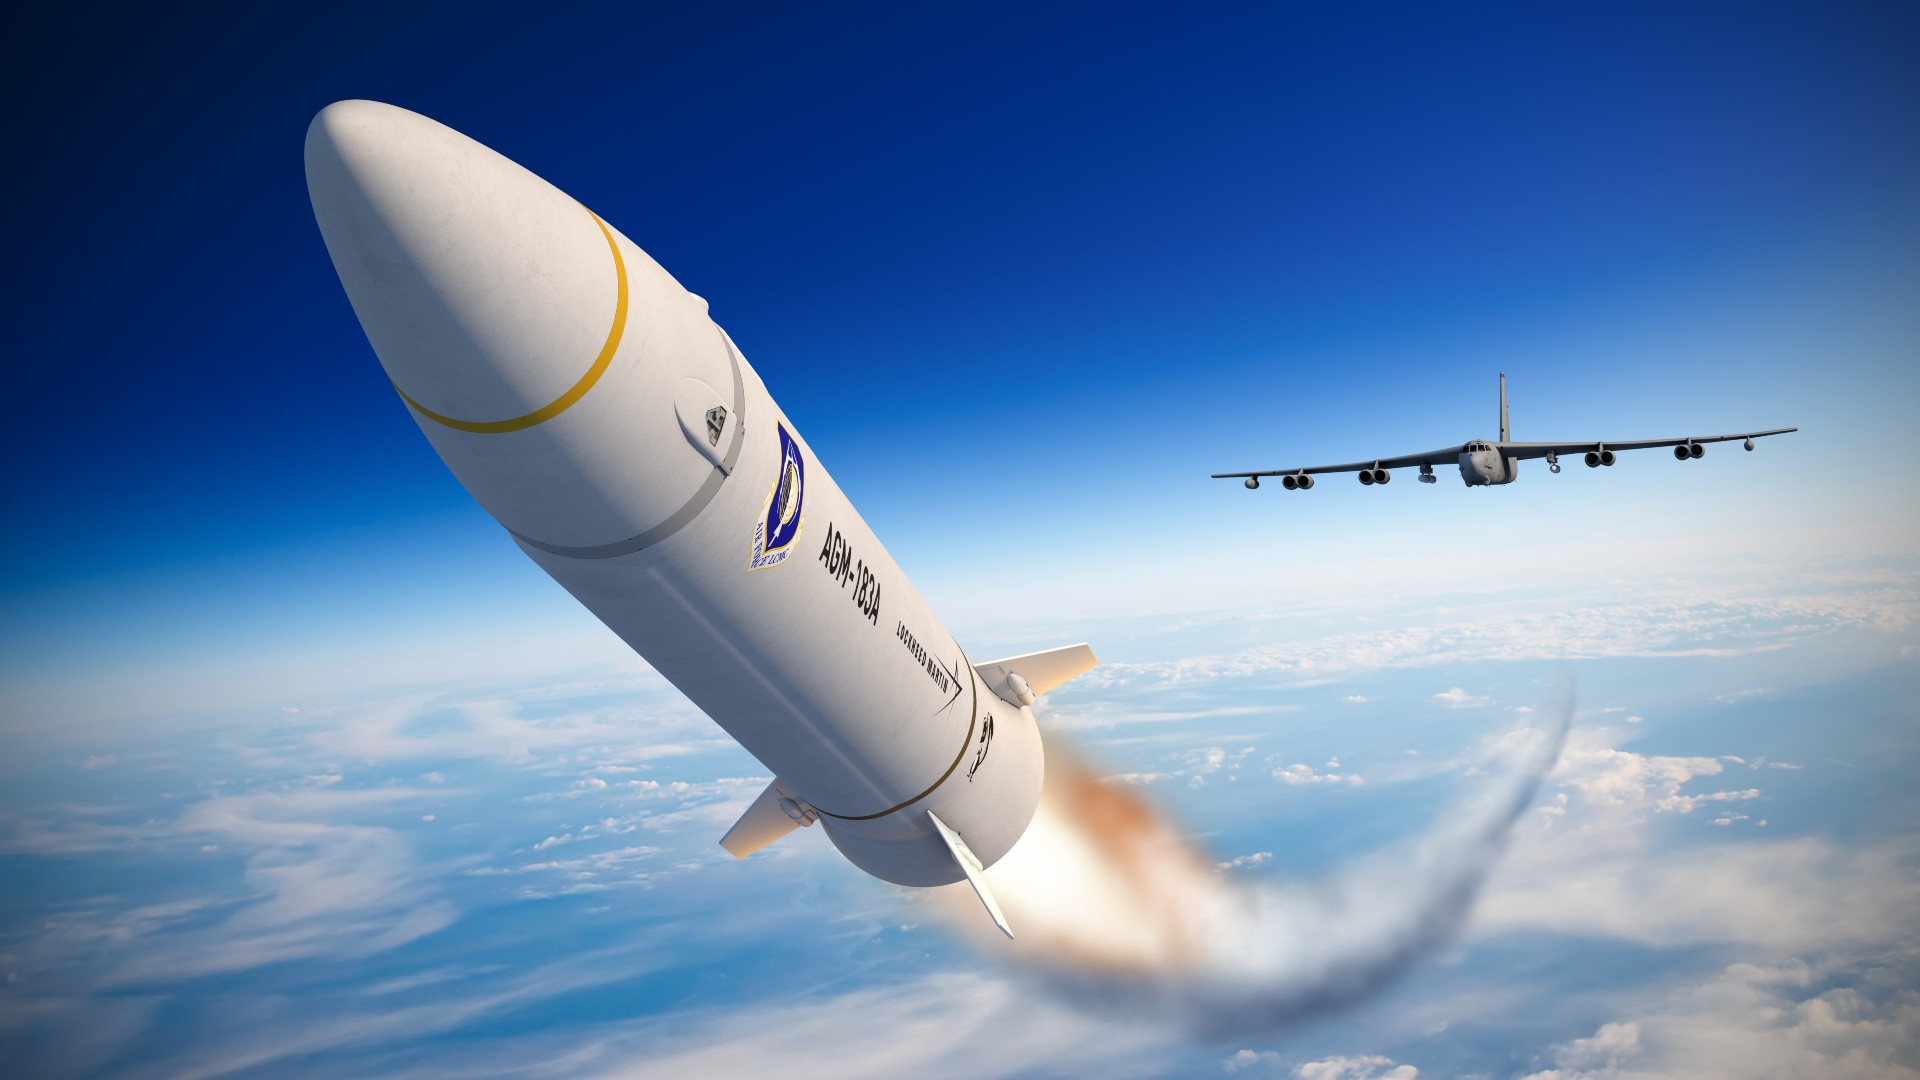 USA zamierza zamknąć program ARRW po nieudanych testach i odmowie zakupu rakiet hipersonicznych